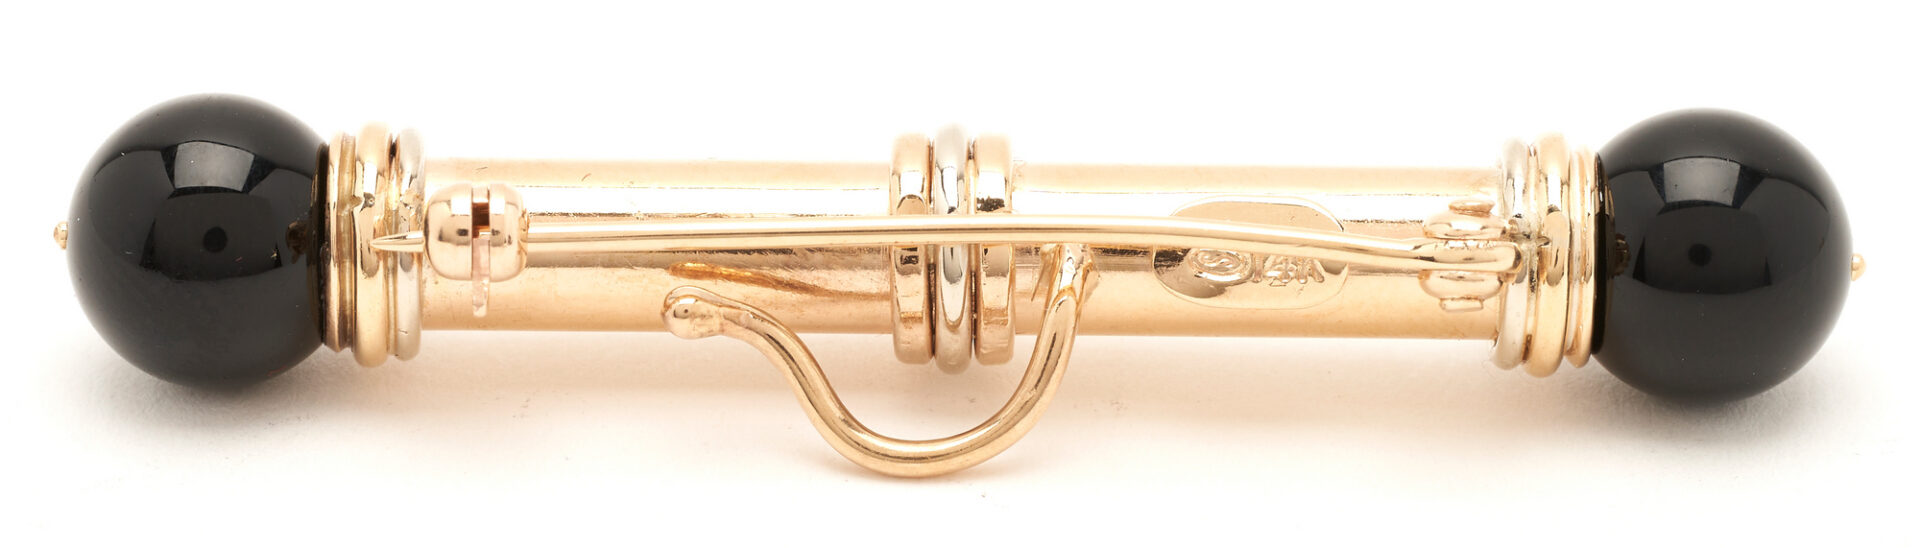 Lot 826: 14K Gold & Gemstone Brooch & 14k Gemstone Barbell Earrings